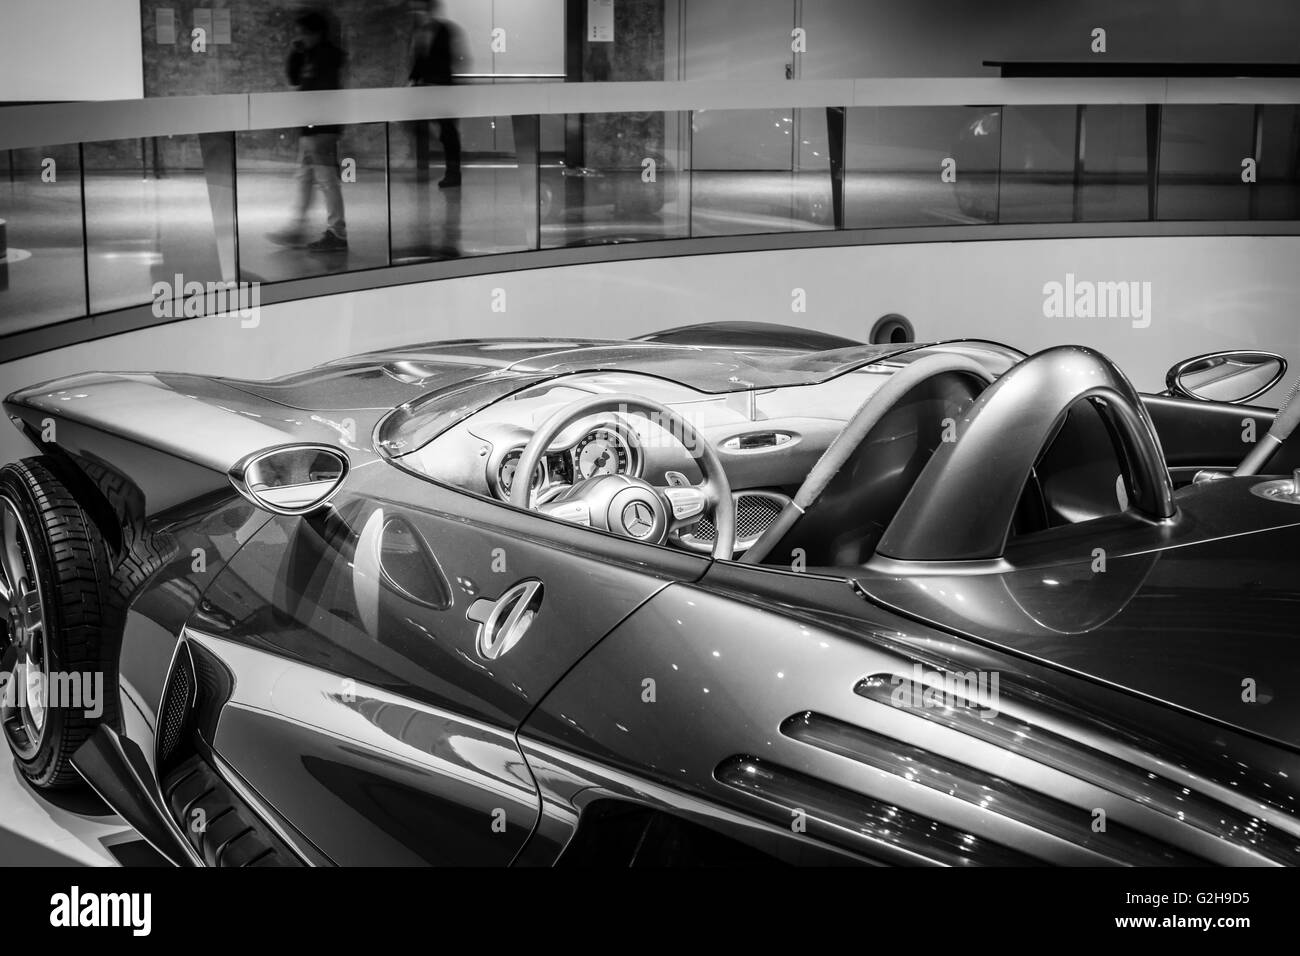 STUTTGART, Germania- 19 marzo 2016: dettaglio della concept car Mercedes-Benz F400 Carving, 2001. In bianco e nero. Mercedes-Benz Foto Stock